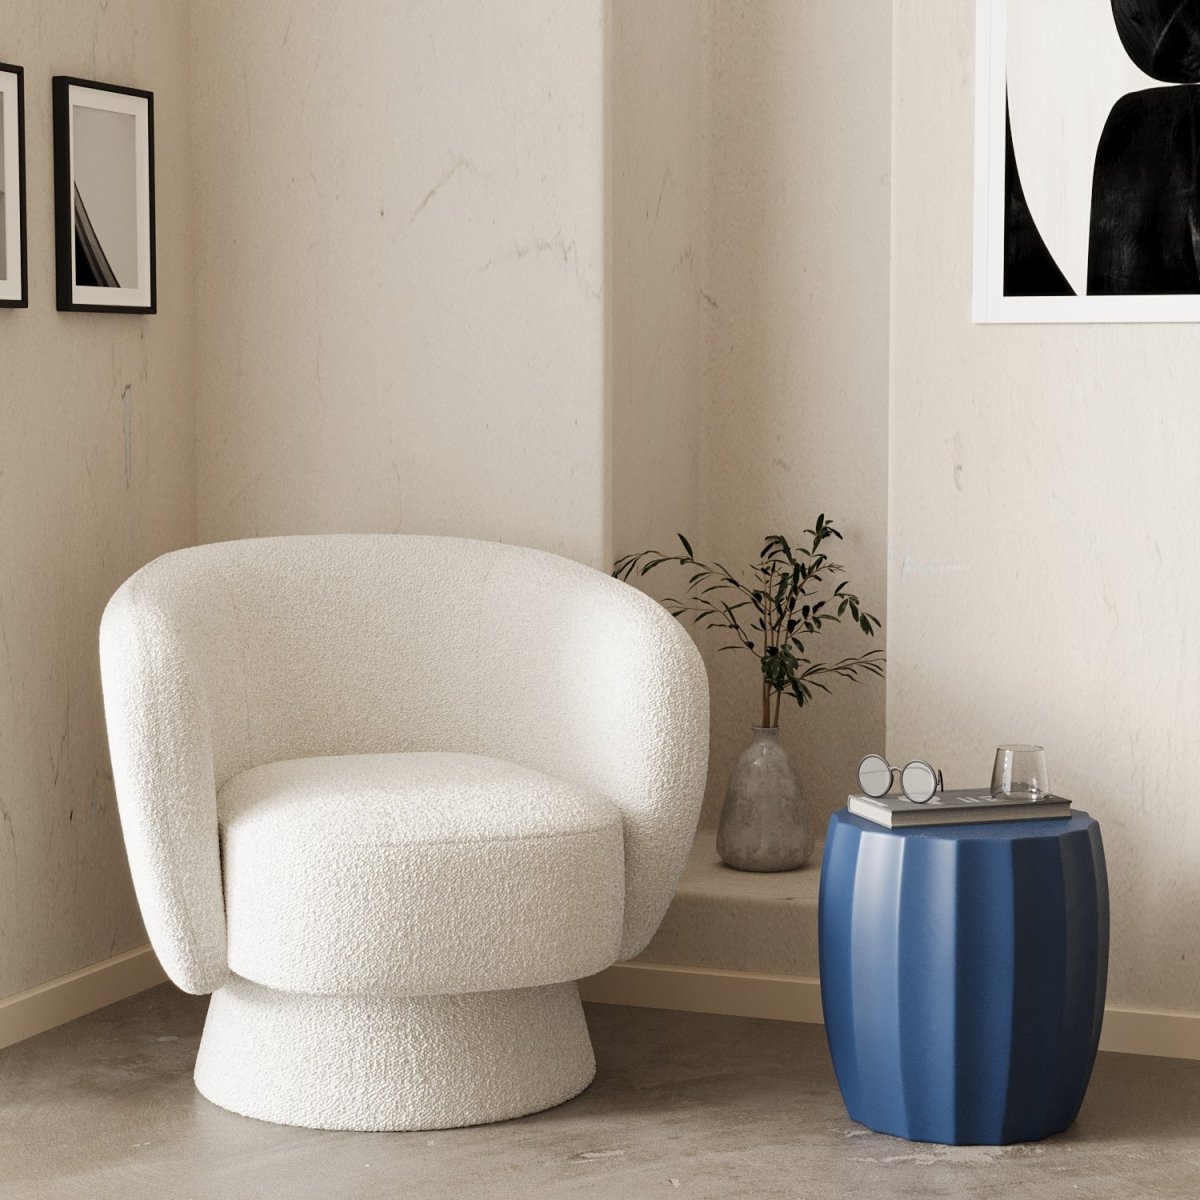 Une touche de couleur et un style moderne dans votre salon : Table d'appoint ronde en ciment bleu - Potiron Paris, décoration maison pas cher